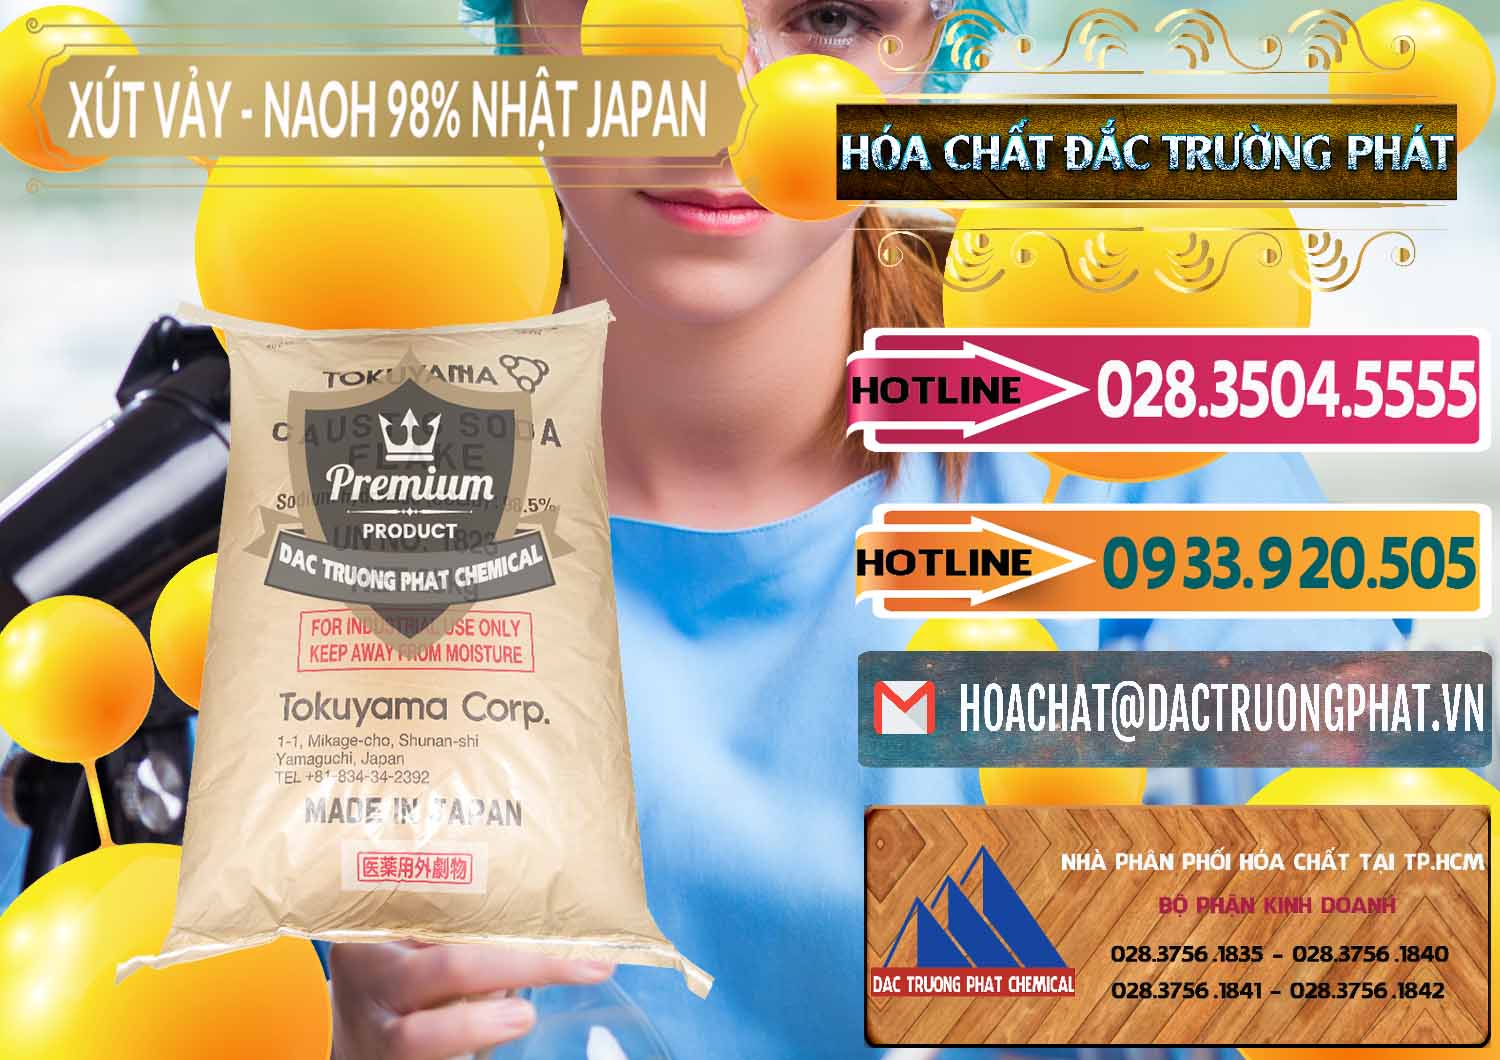 Nơi kinh doanh ( bán ) Xút Vảy - NaOH Vảy 98% Tokuyama Nhật Bản Japan - 0173 - Nhà phân phối ( kinh doanh ) hóa chất tại TP.HCM - dactruongphat.vn